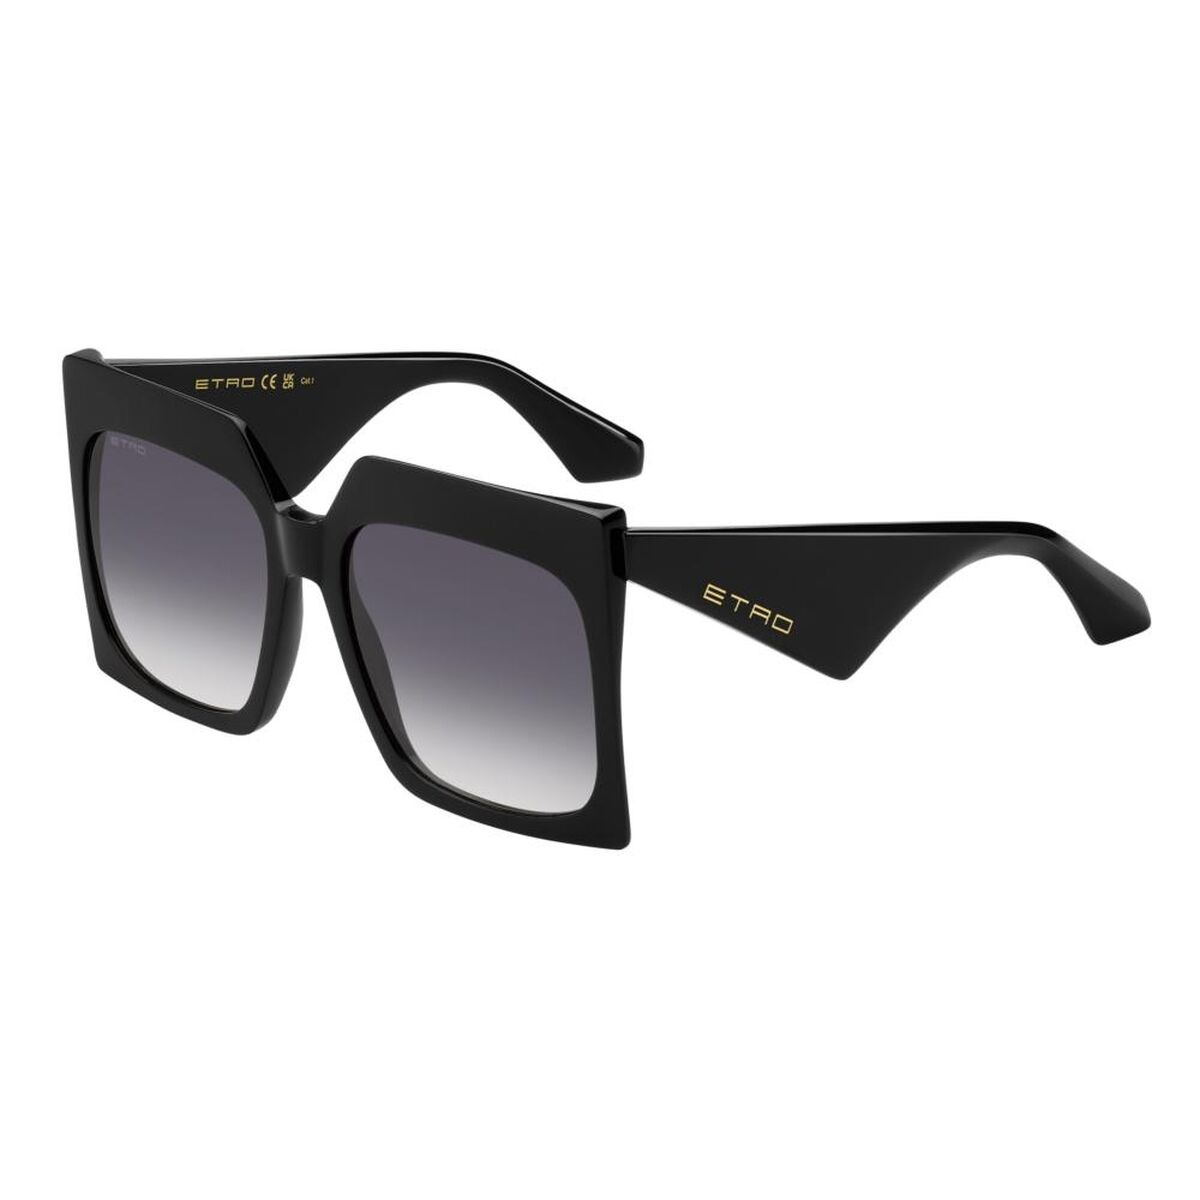 Kaufe Damensonnenbrille Etro ETRO 0002_S bei AWK Flagship um € 233.00